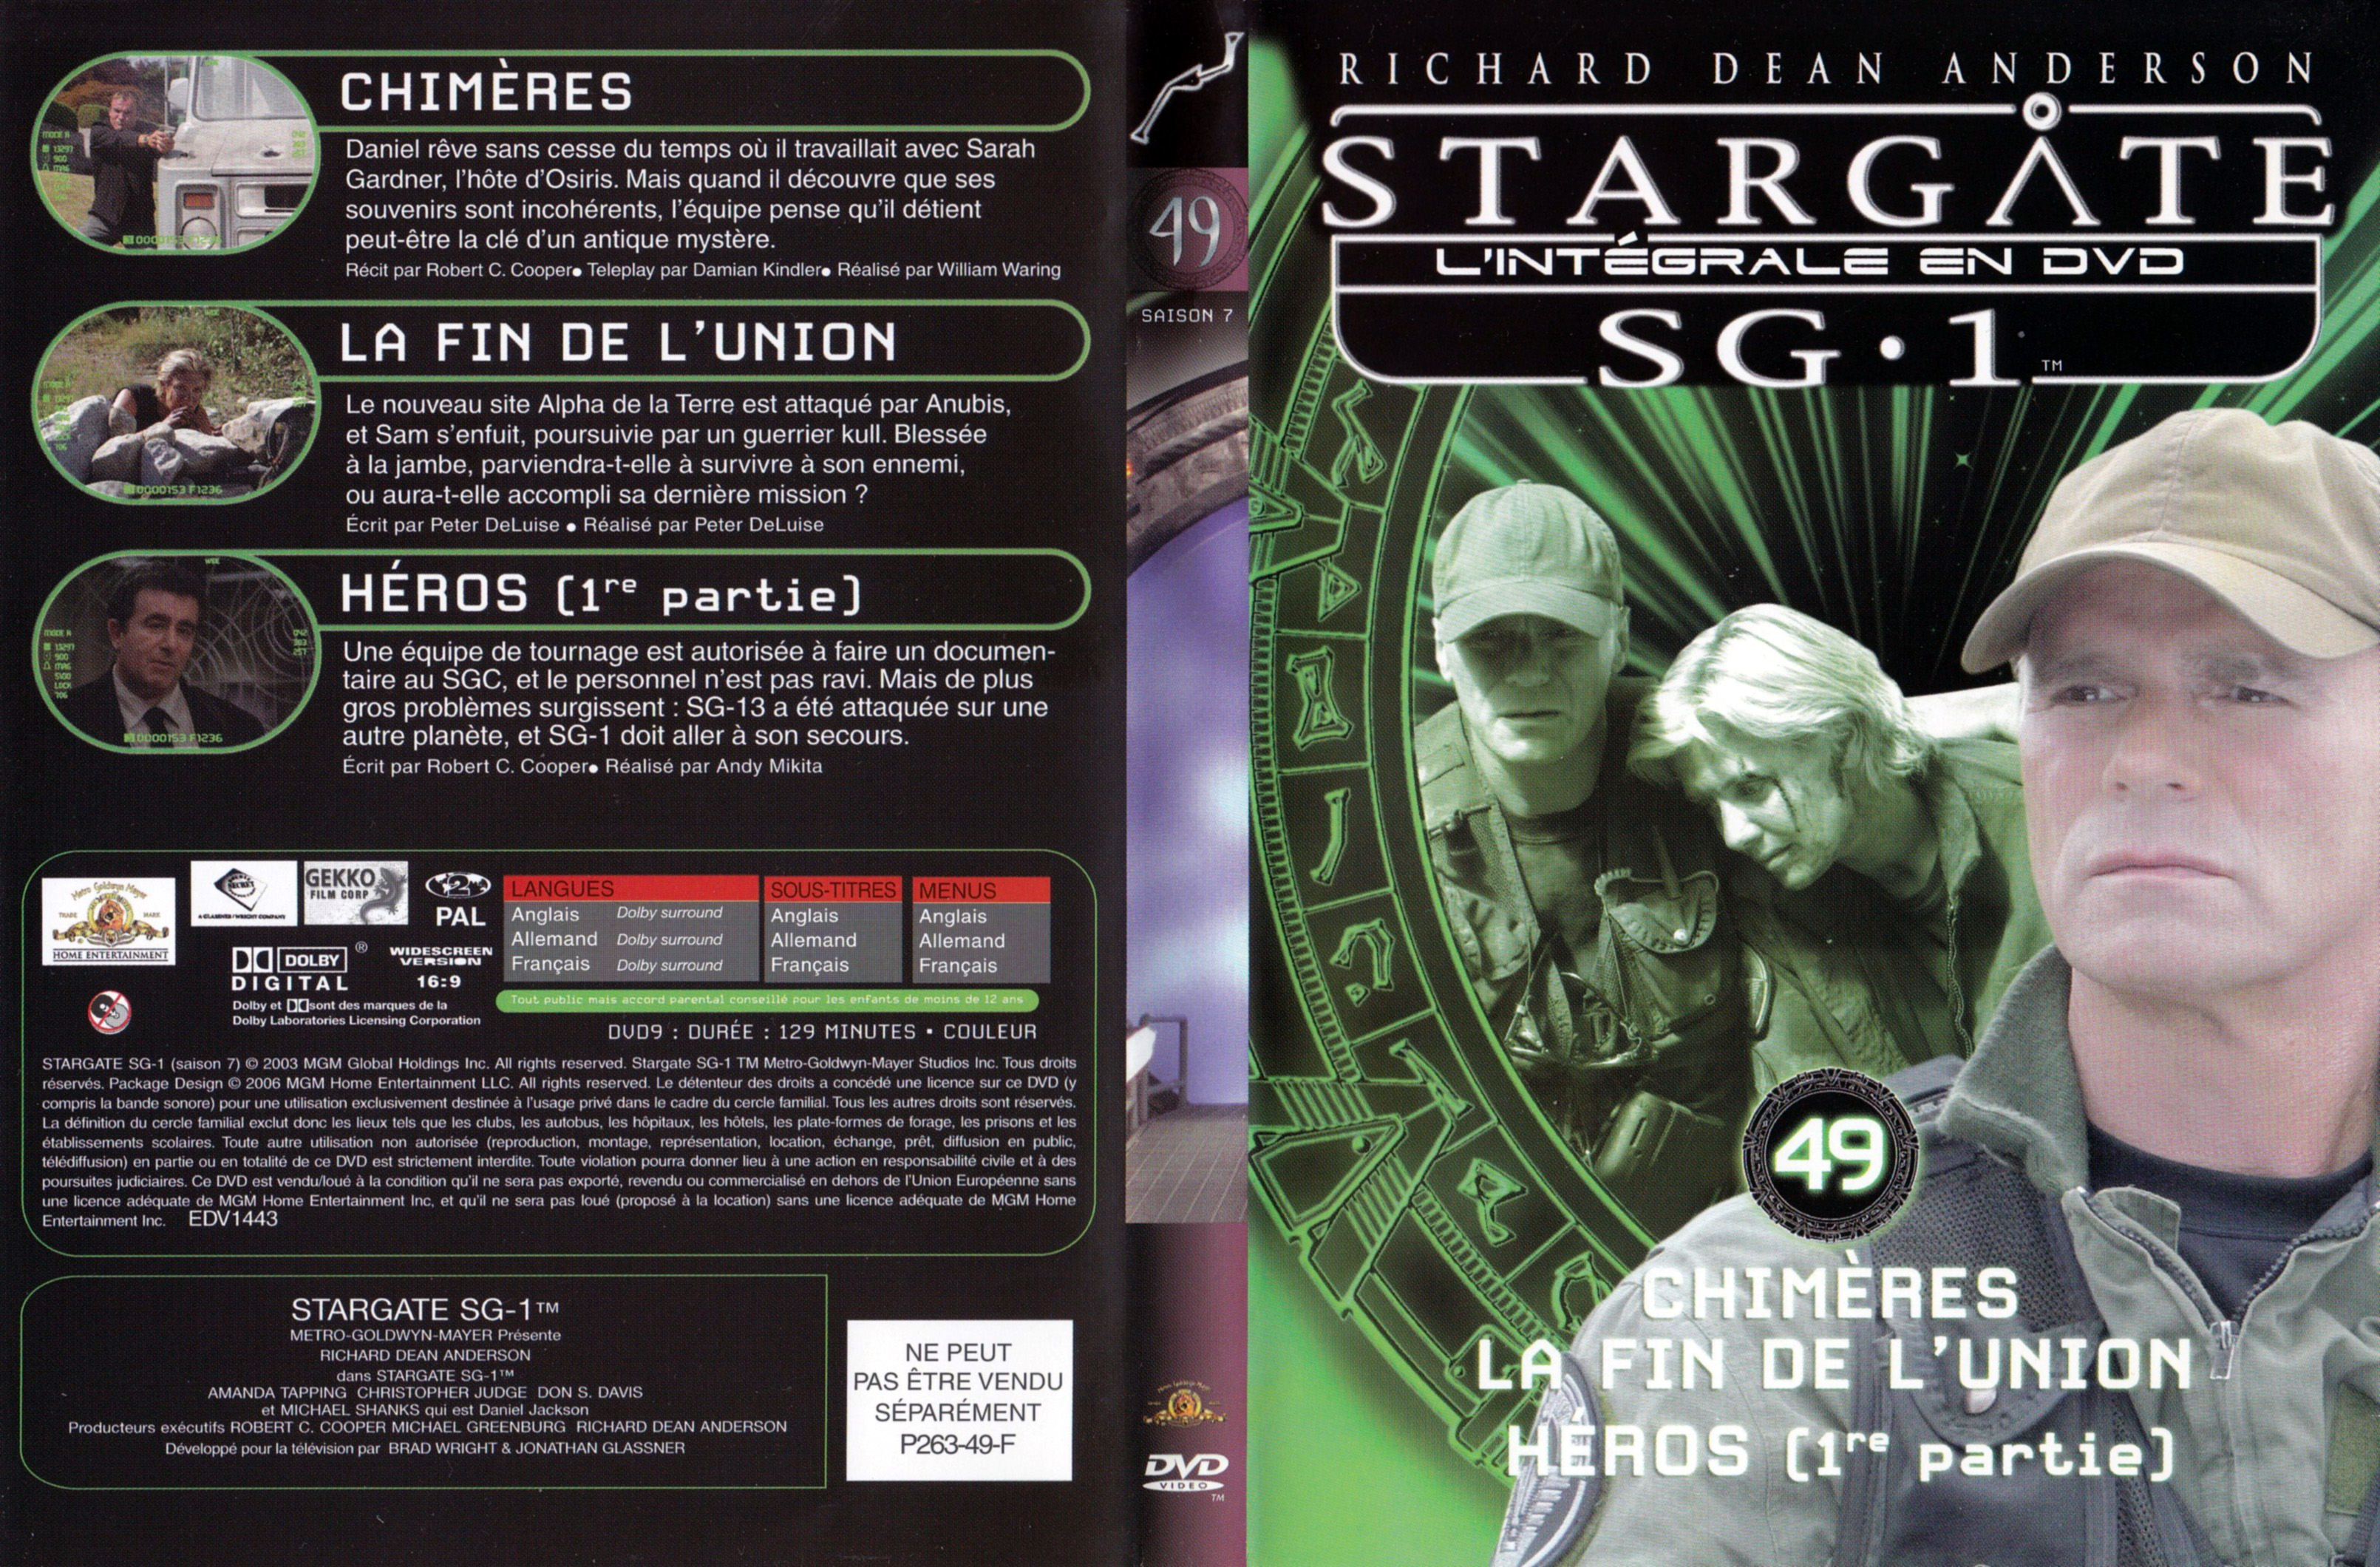 Jaquette DVD Stargate SG1 Intgrale Saison 7 vol 49